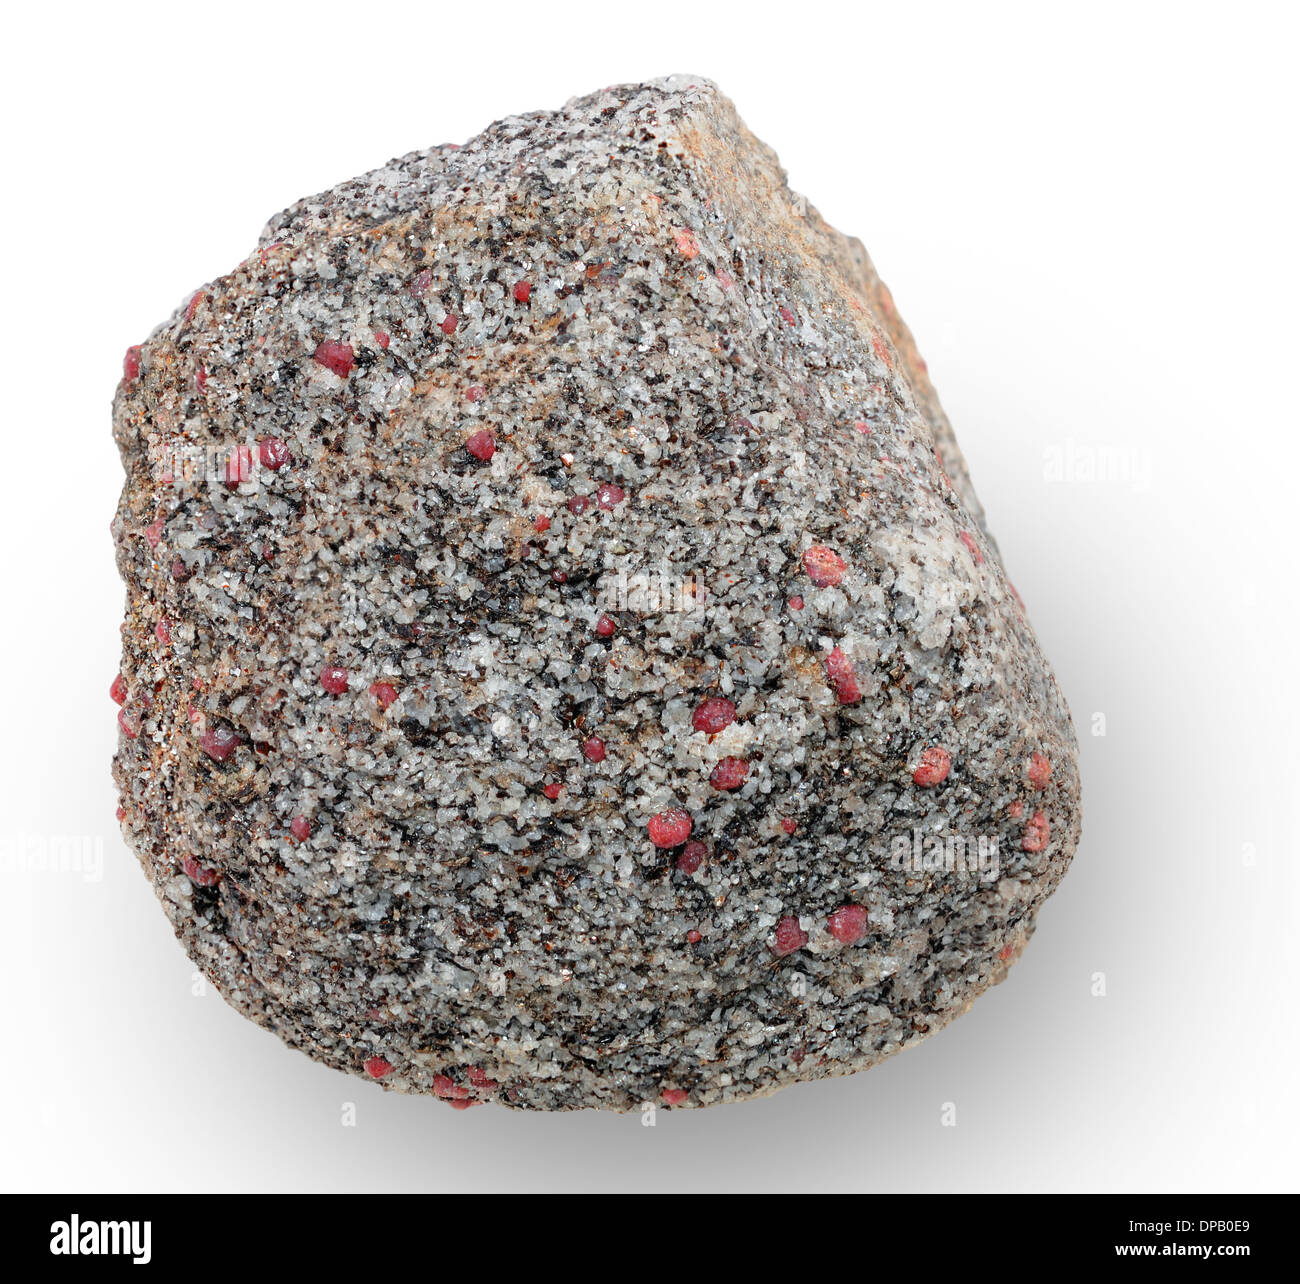 Un spécimen de minéral. Composé d'agrégats minéraux grenat et quartz. Sites d'échantillonnage ont été notées dans le fichier géolocaliser Banque D'Images